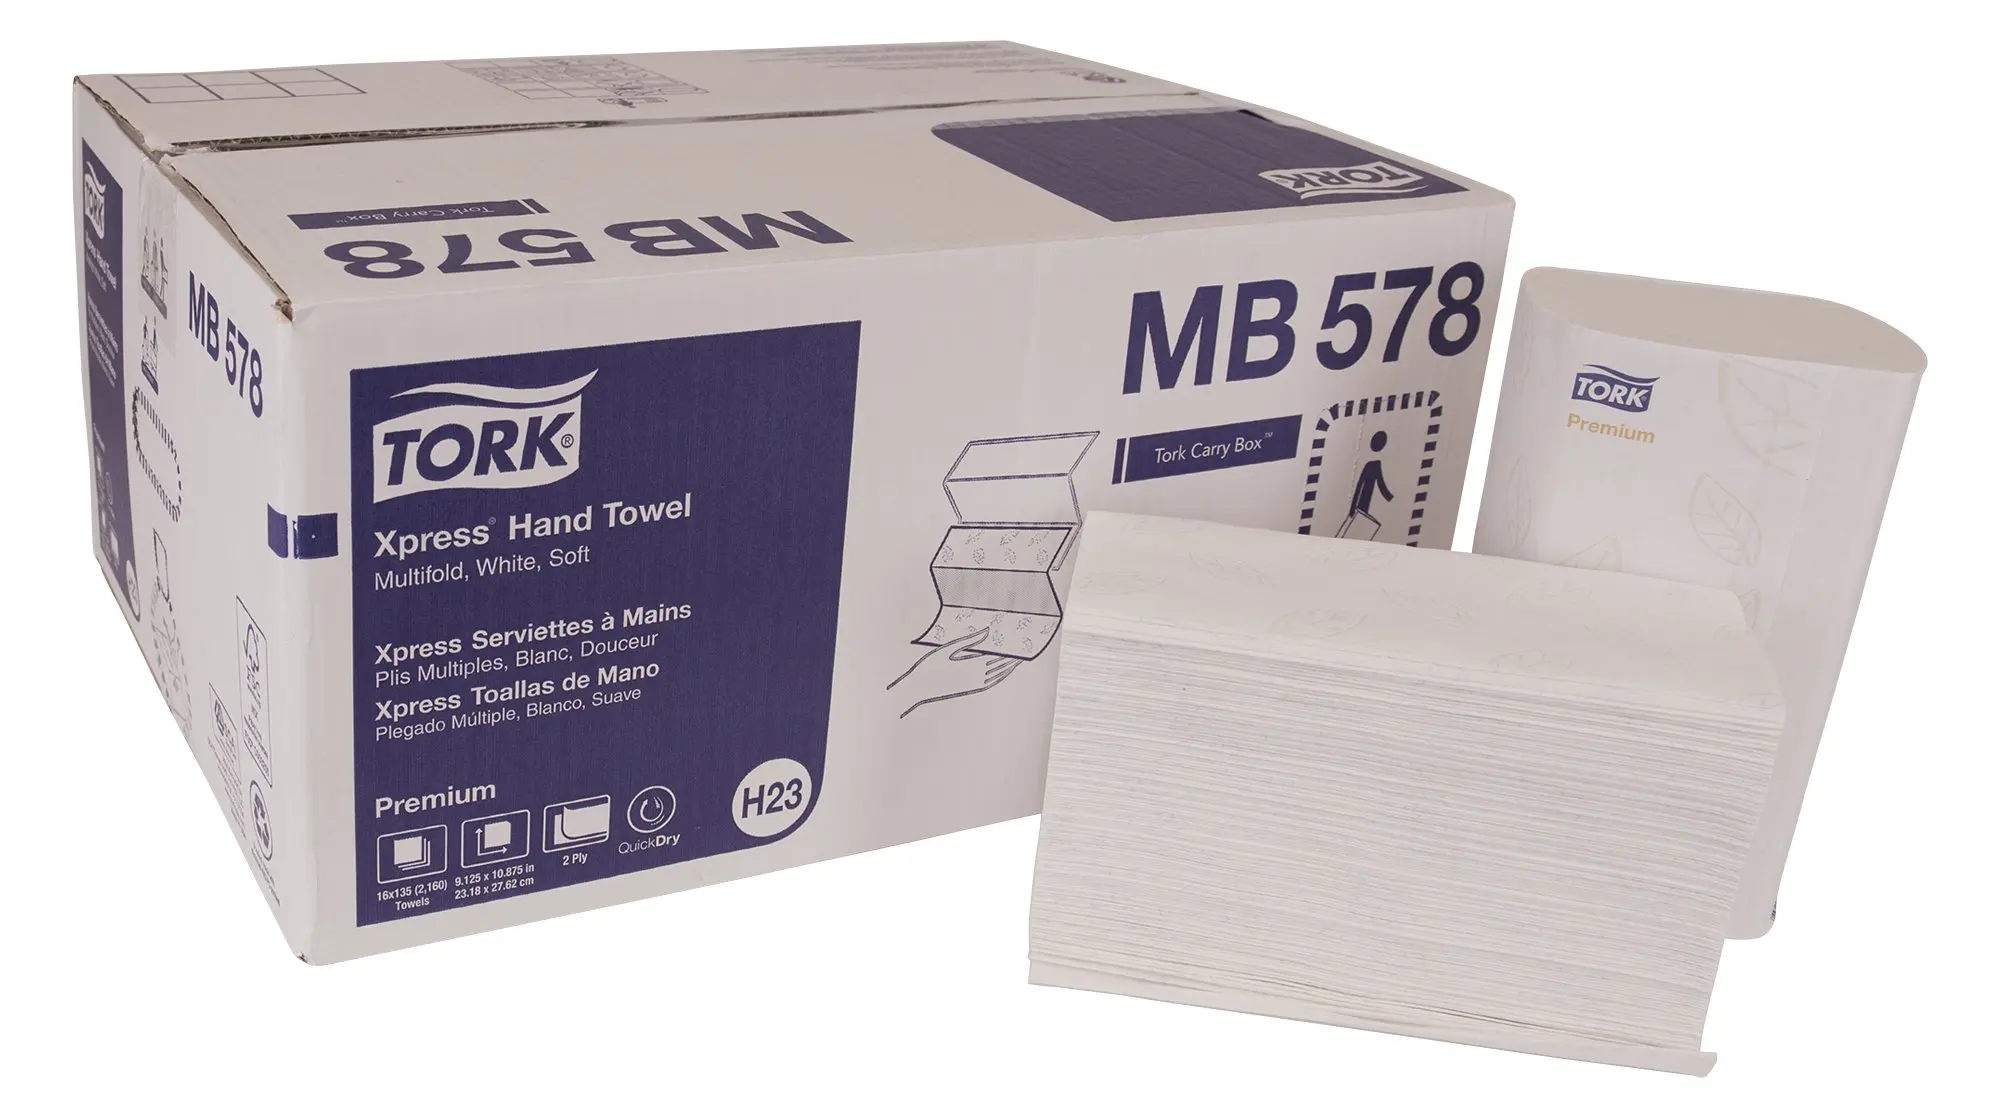 Полотенца tork matic. Полотенце Tork Premium Soft. Tork Premium Extra Soft t3. Tork Premium 4 салфетки 21.6 33. Tork Xpress Universal Multifold.